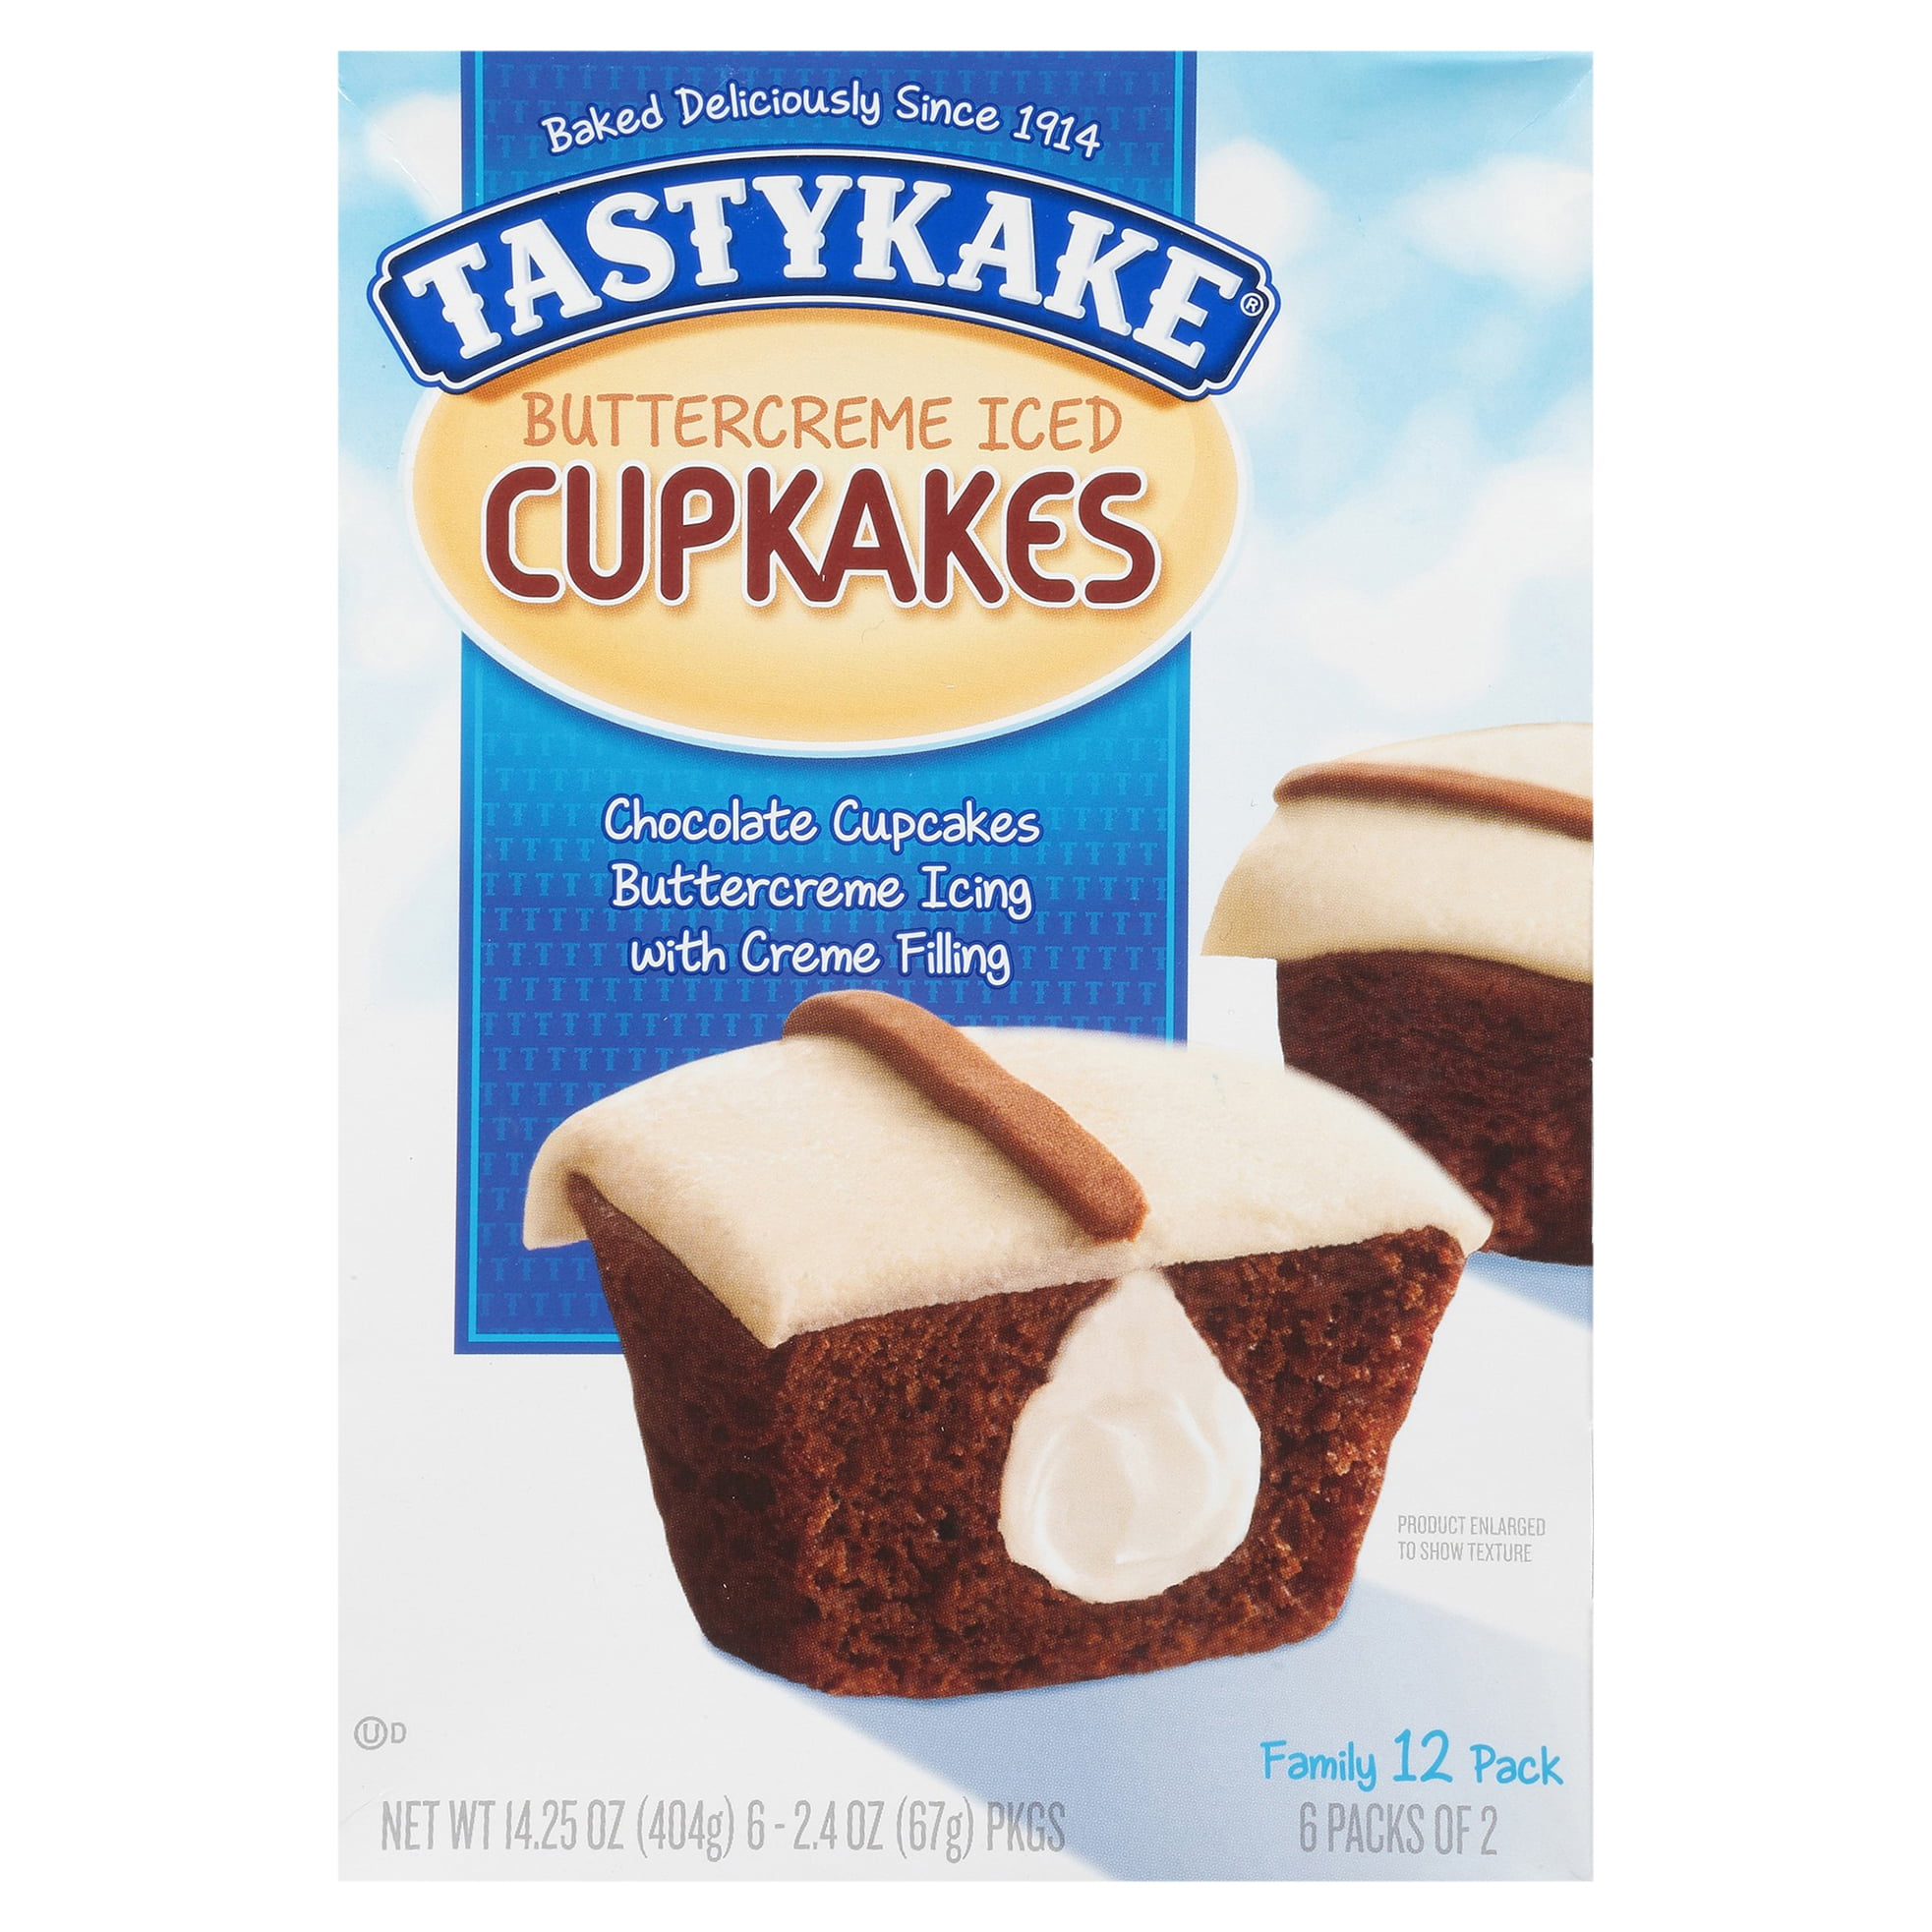 Tastykake Buttercreme Cupkakes, 12 Count, 6 Packs of 2 Cupcakes